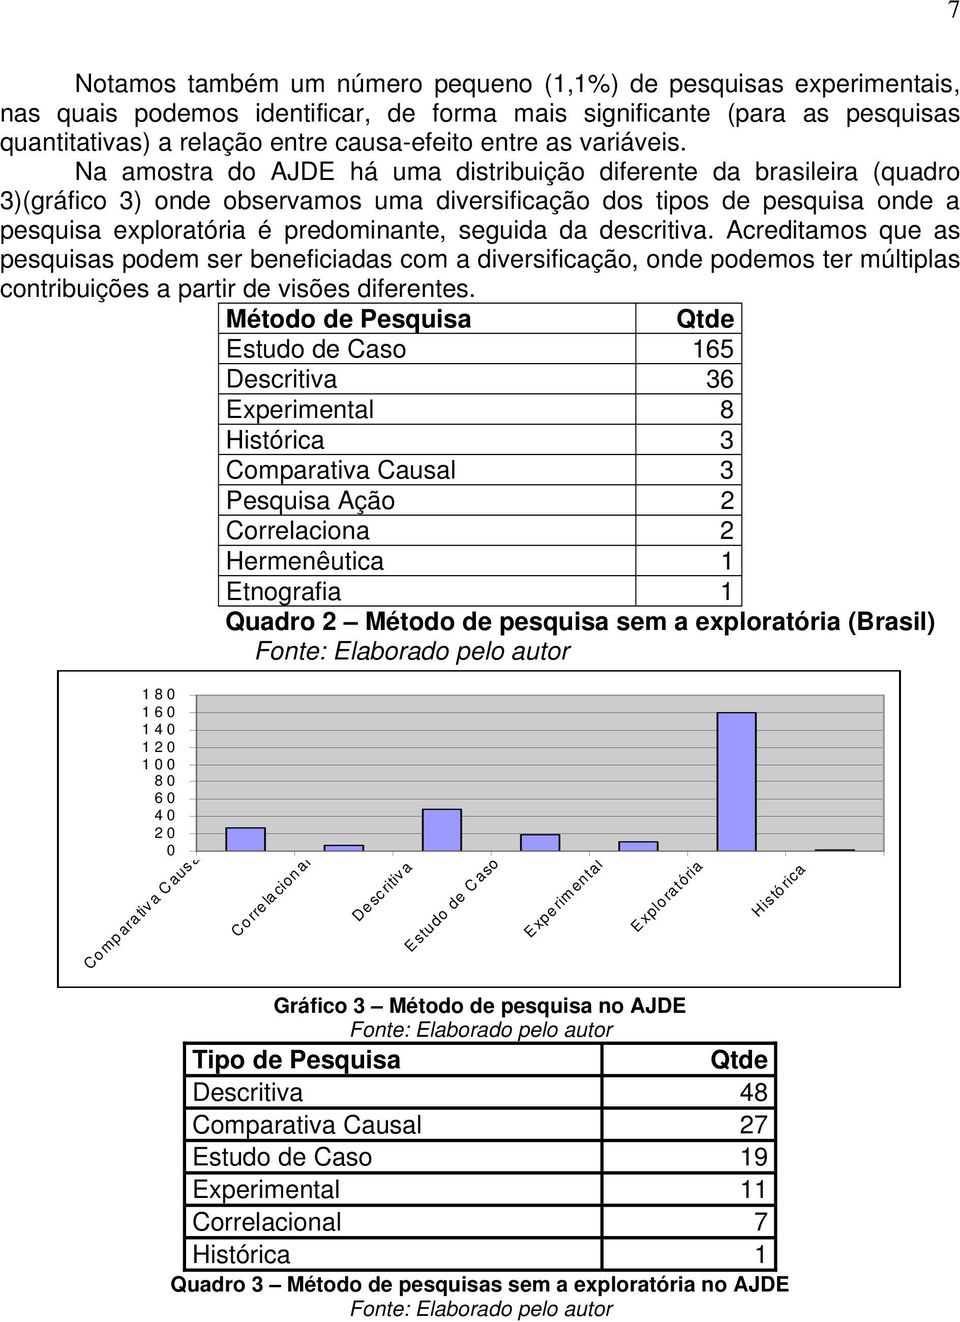 Na amostra do AJDE há uma distribuição diferente da brasileira (quadro 3)(gráfico 3) onde observamos uma diversificação dos tipos de pesquisa onde a pesquisa exploratória é predominante, seguida da